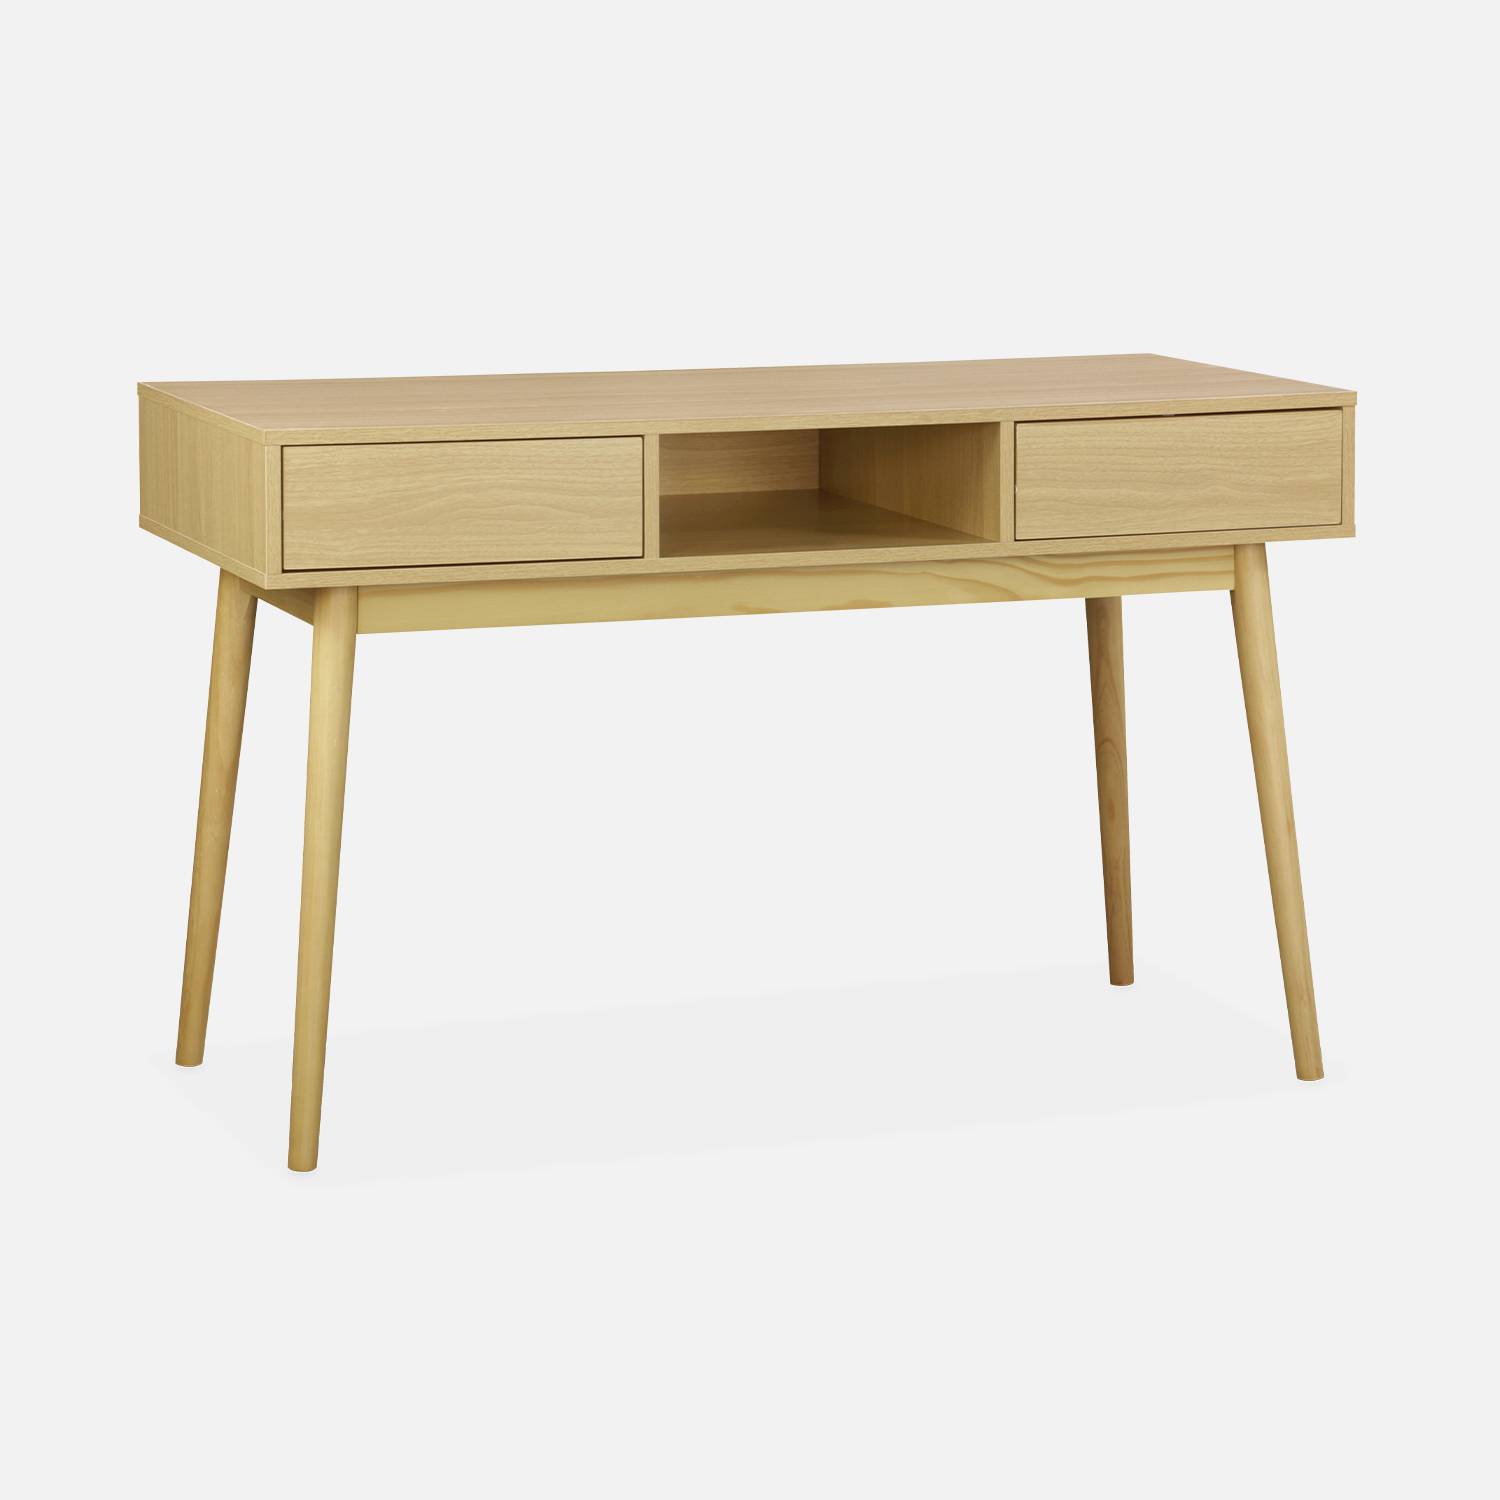 Console décor bois - Mika - 2 tiroirs, 1 casier de rangement, pieds scandinaves, L 120 x l 48 x H 75cm  Photo1